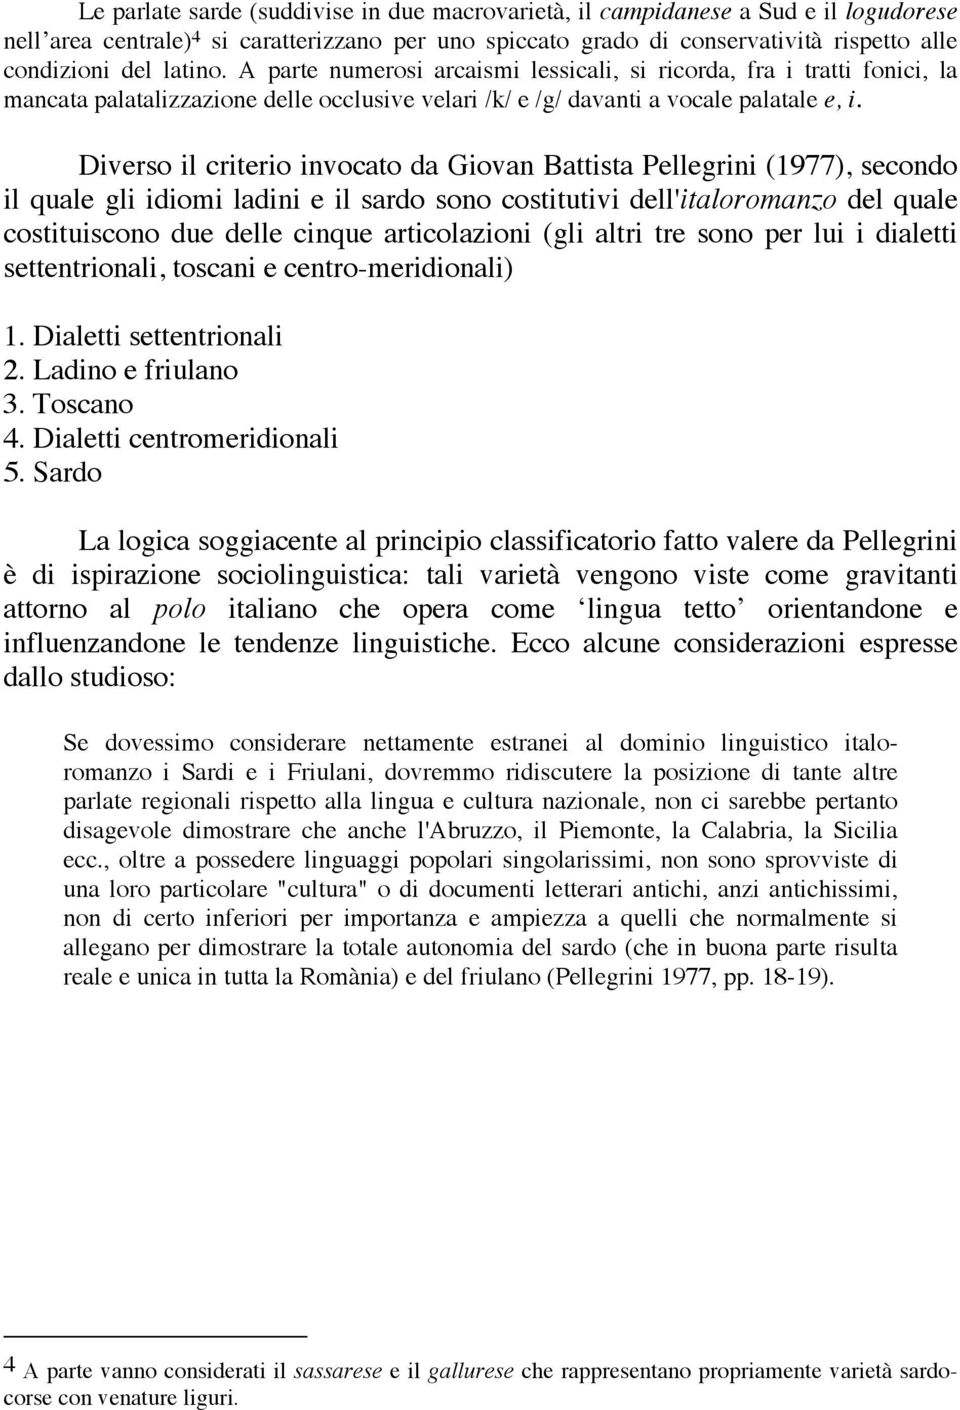 Diverso il criterio invocato da Giovan Battista Pellegrini (1977), secondo il quale gli idiomi ladini e il sardo sono costitutivi dell'italoromanzo del quale costituiscono due delle cinque